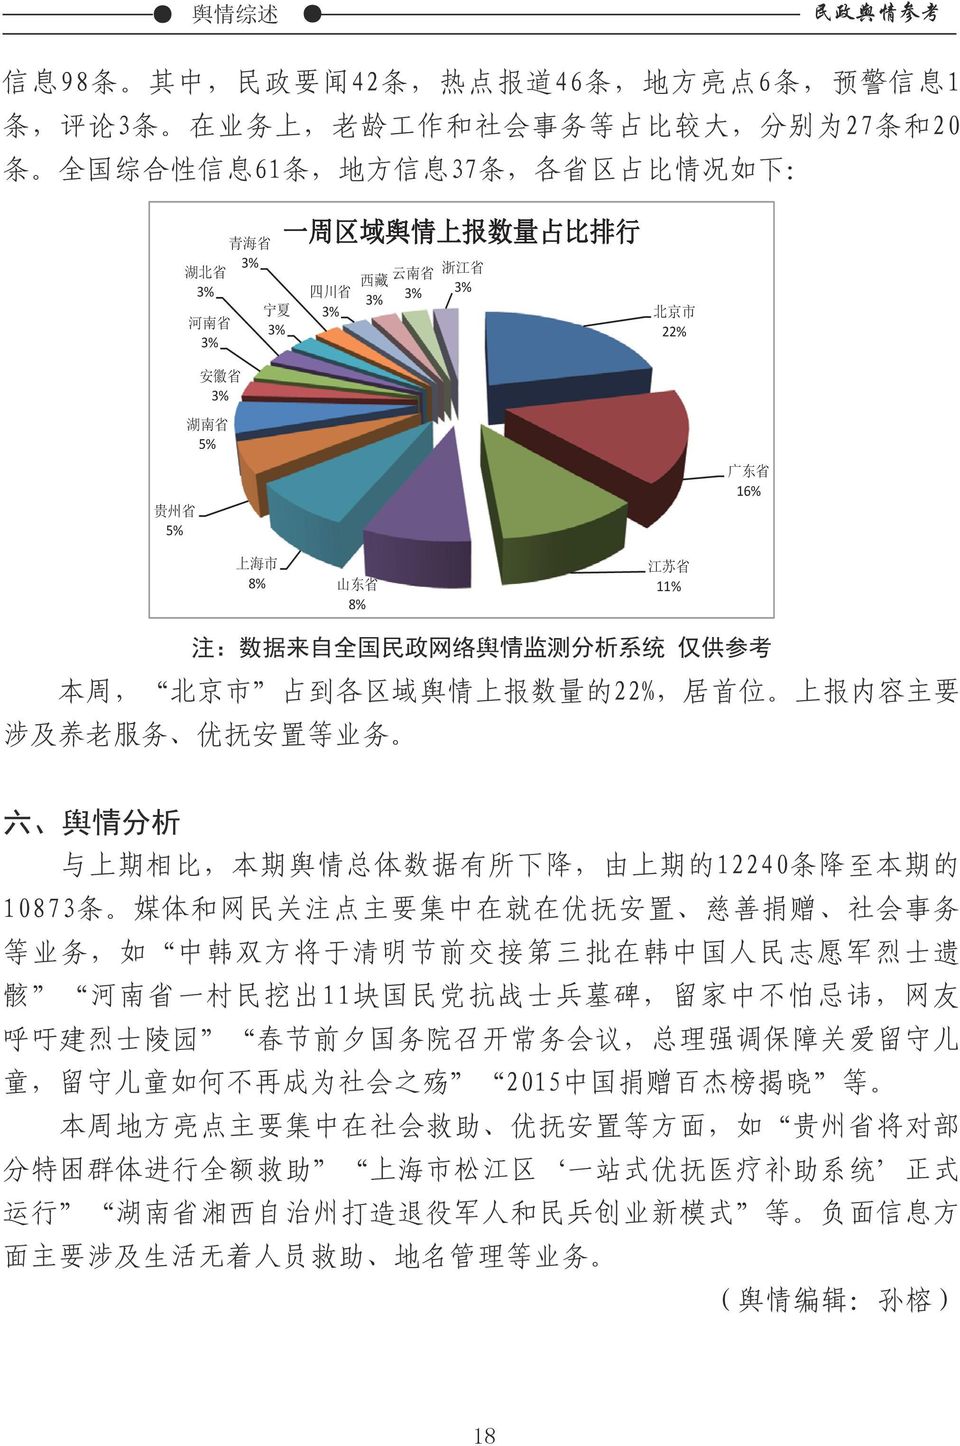 络 舆 情 监 测 分 析 系 统 仅 供 参 考 本 周, 北 京 市 占 到 各 区 域 舆 情 上 报 数 量 的 22%, 居 首 位 上 报 内 容 主 要 涉 及 养 老 服 务 优 抚 安 置 等 业 务 六 舆 情 分 析 与 上 期 相 比, 本 期 舆 情 总 体 数 据 有 所 下 降, 由 上 期 的 12240 条 降 至 本 期 的 10873 条 媒 体 和 网 民